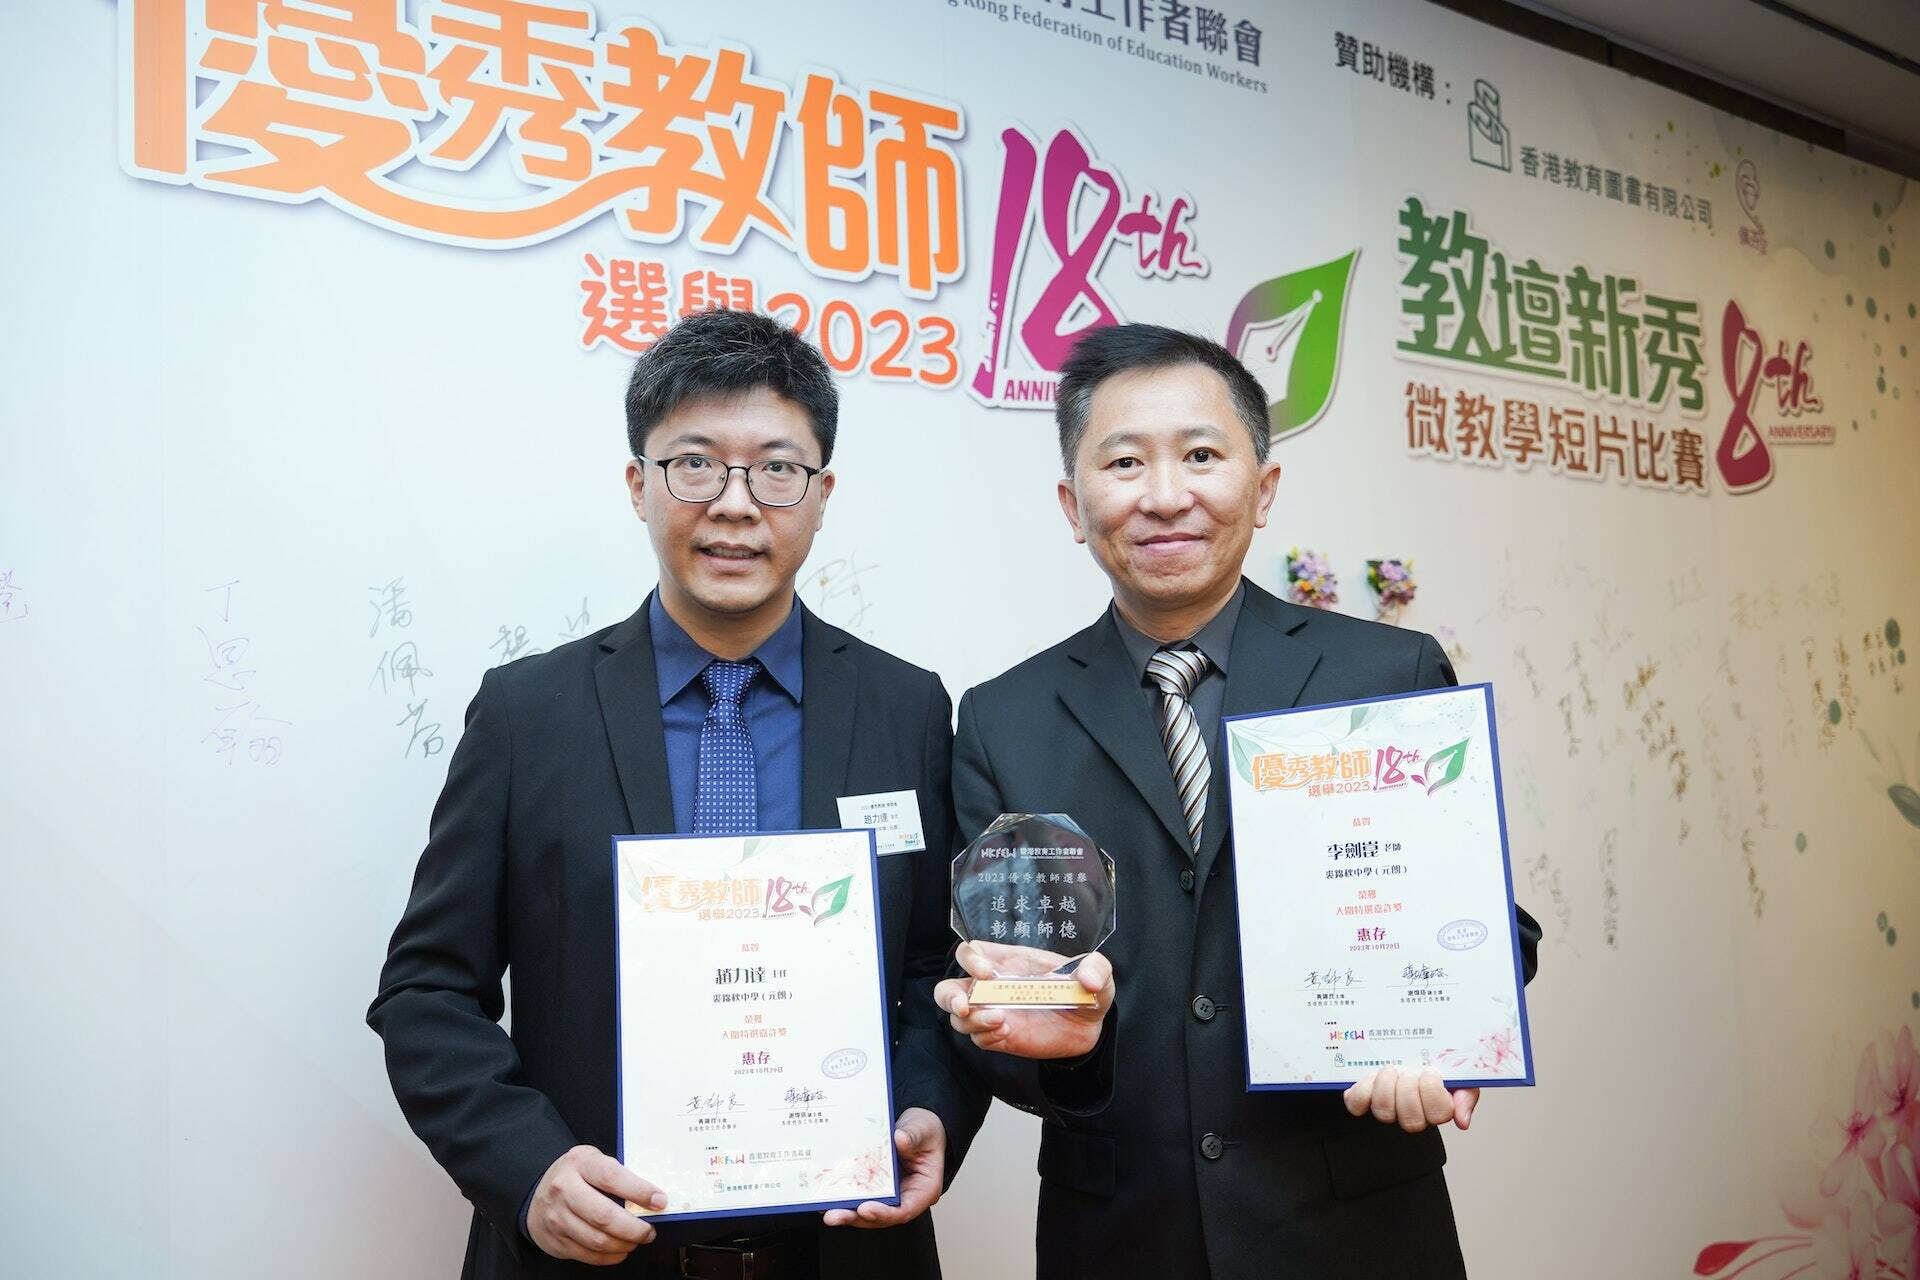 本校趙力達老師和李劍崑老師獲得第18屆優秀教師選舉創新教學組「特選嘉許獎」